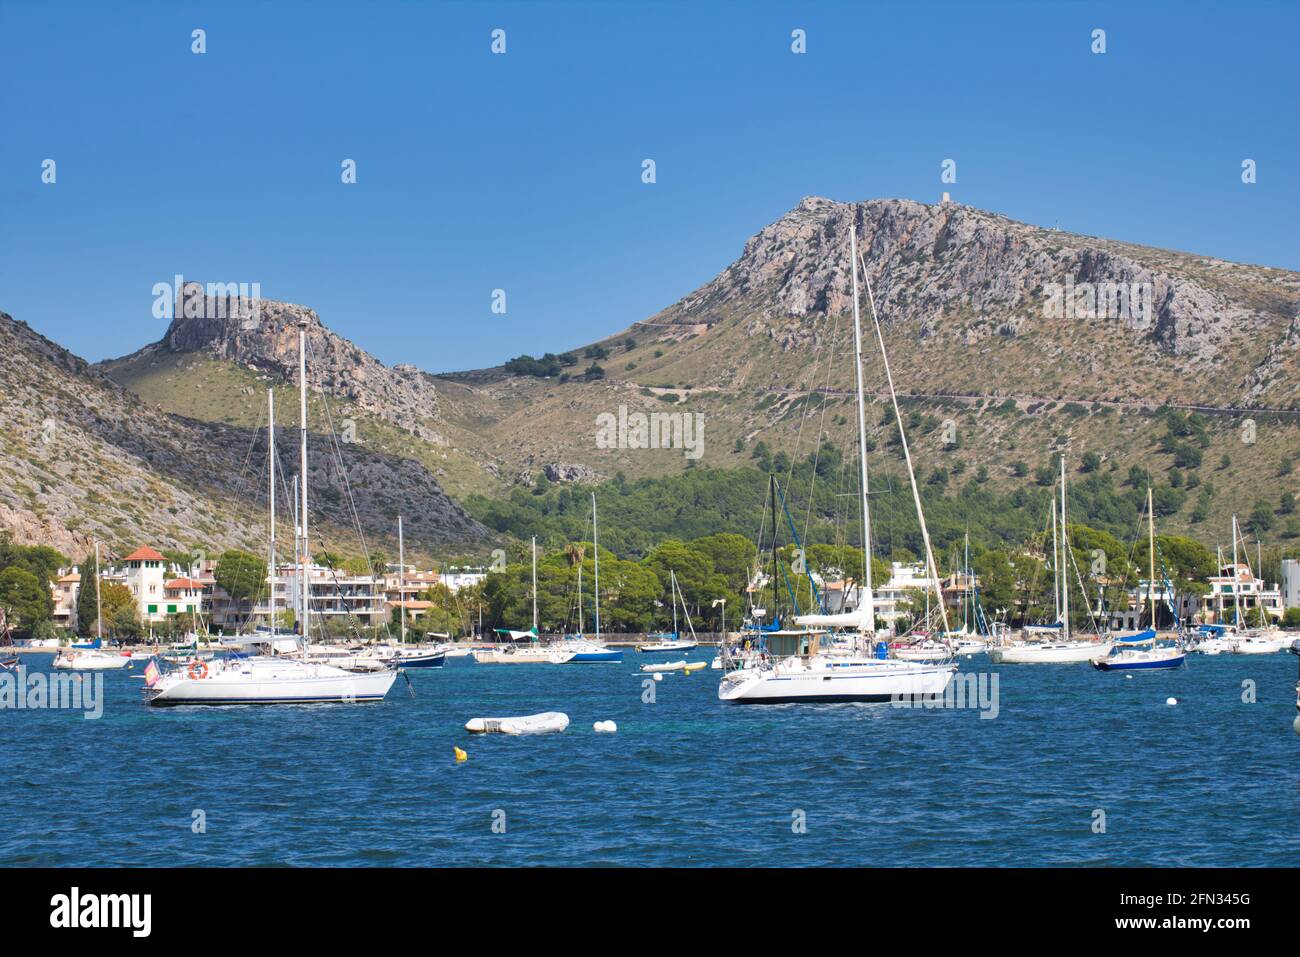 Hafen / Bucht von Alcudia/ Mallorca Foto Stock